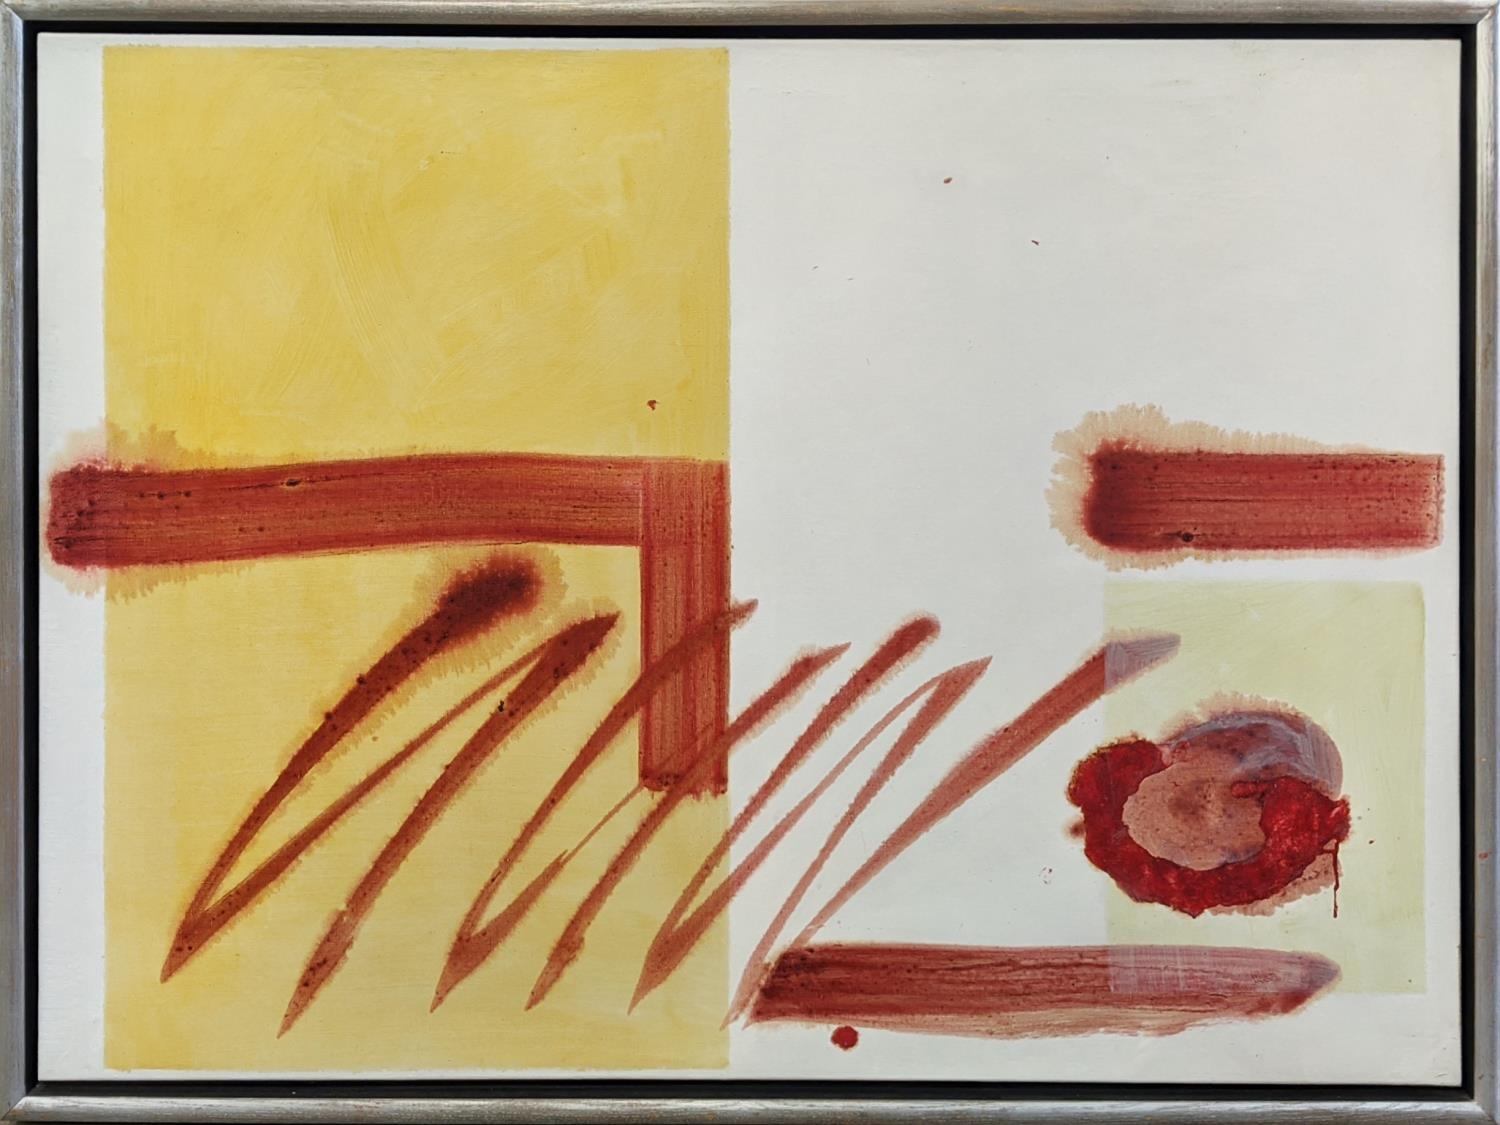 SARA OWEN, 'Opening beyond', oil on linen, 91cm x 122cm, framed.